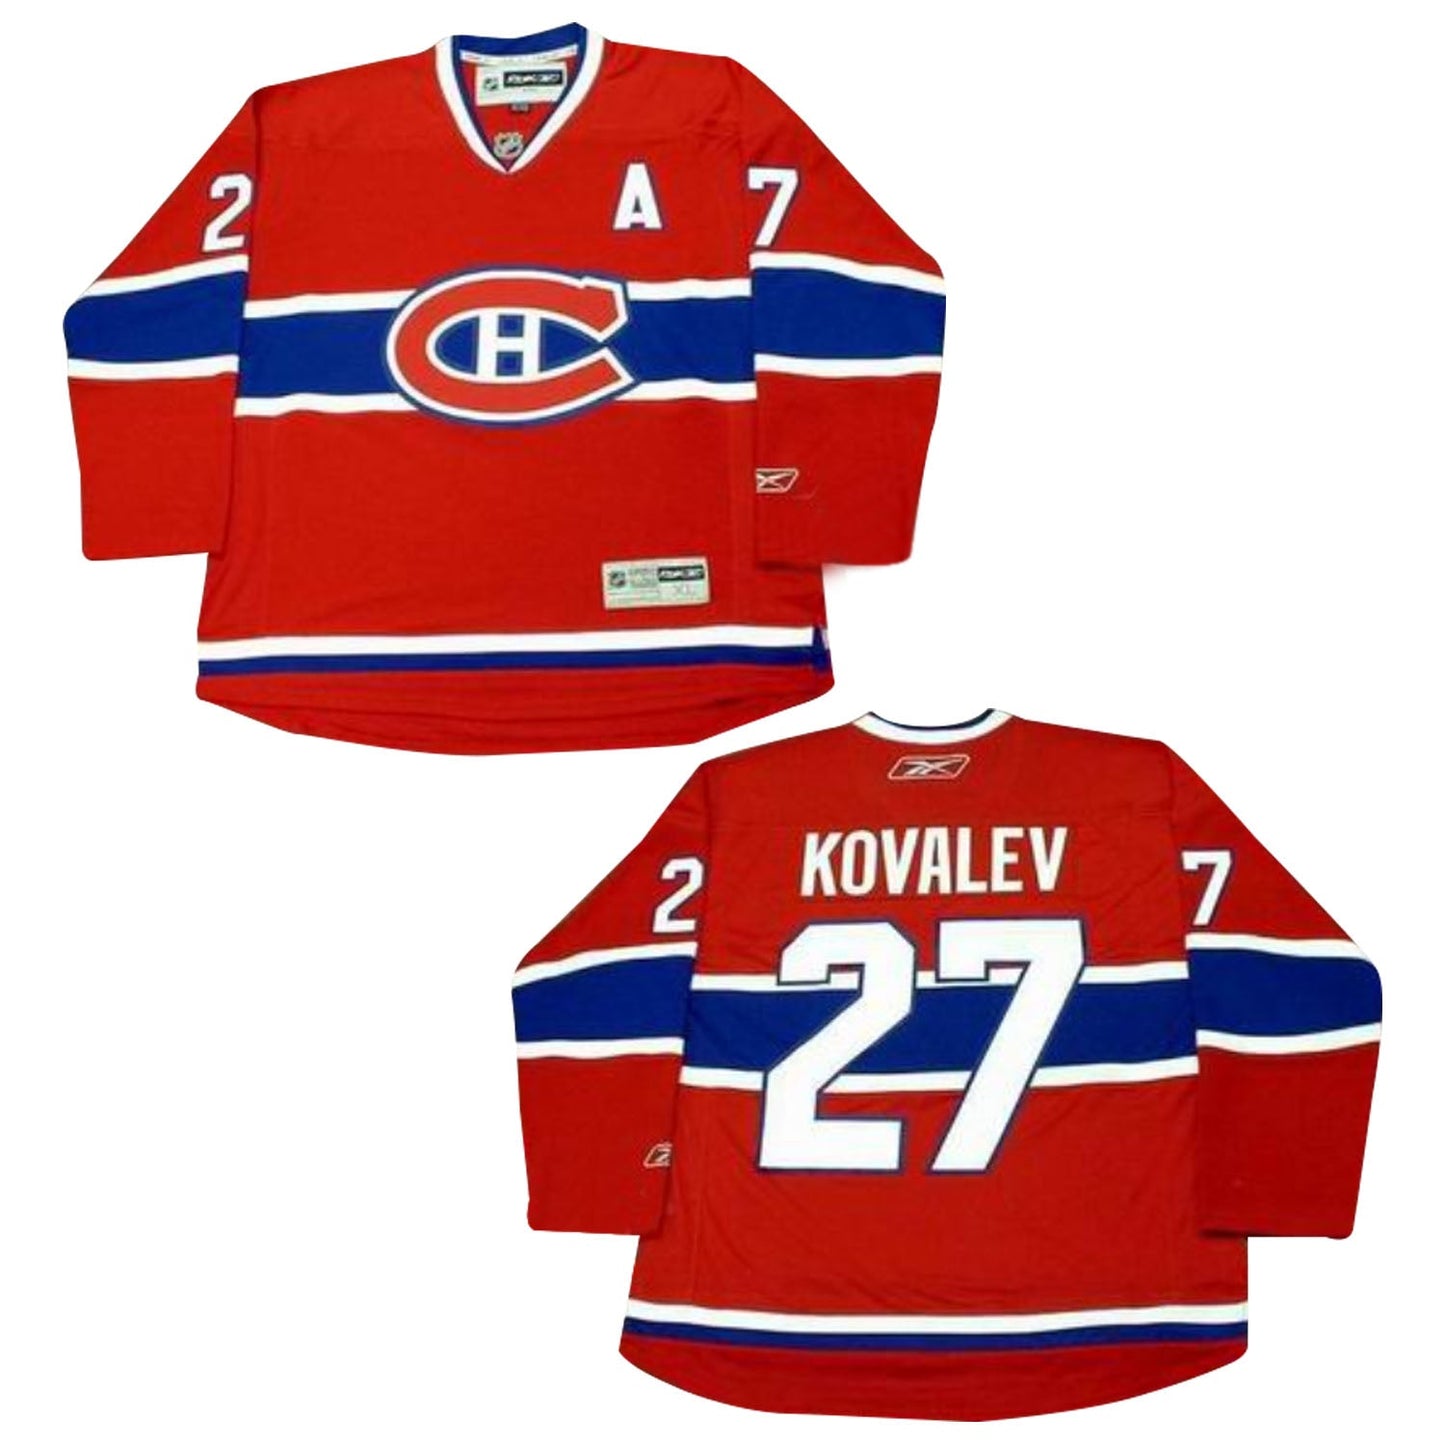 NHL Alexei Kovalev Montreal Canadian 27 Jersey